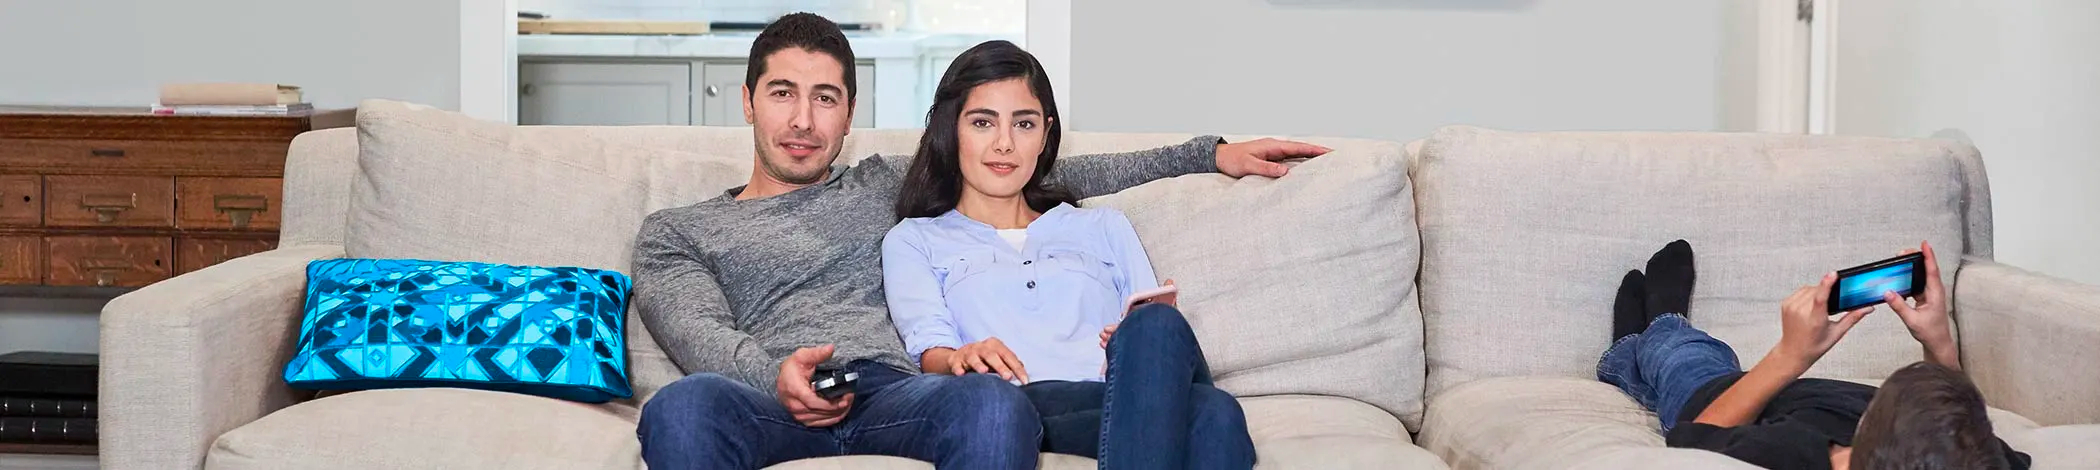 Par bruger tv-fjernbetjening i sofaen, mens barnet bruger smartphone